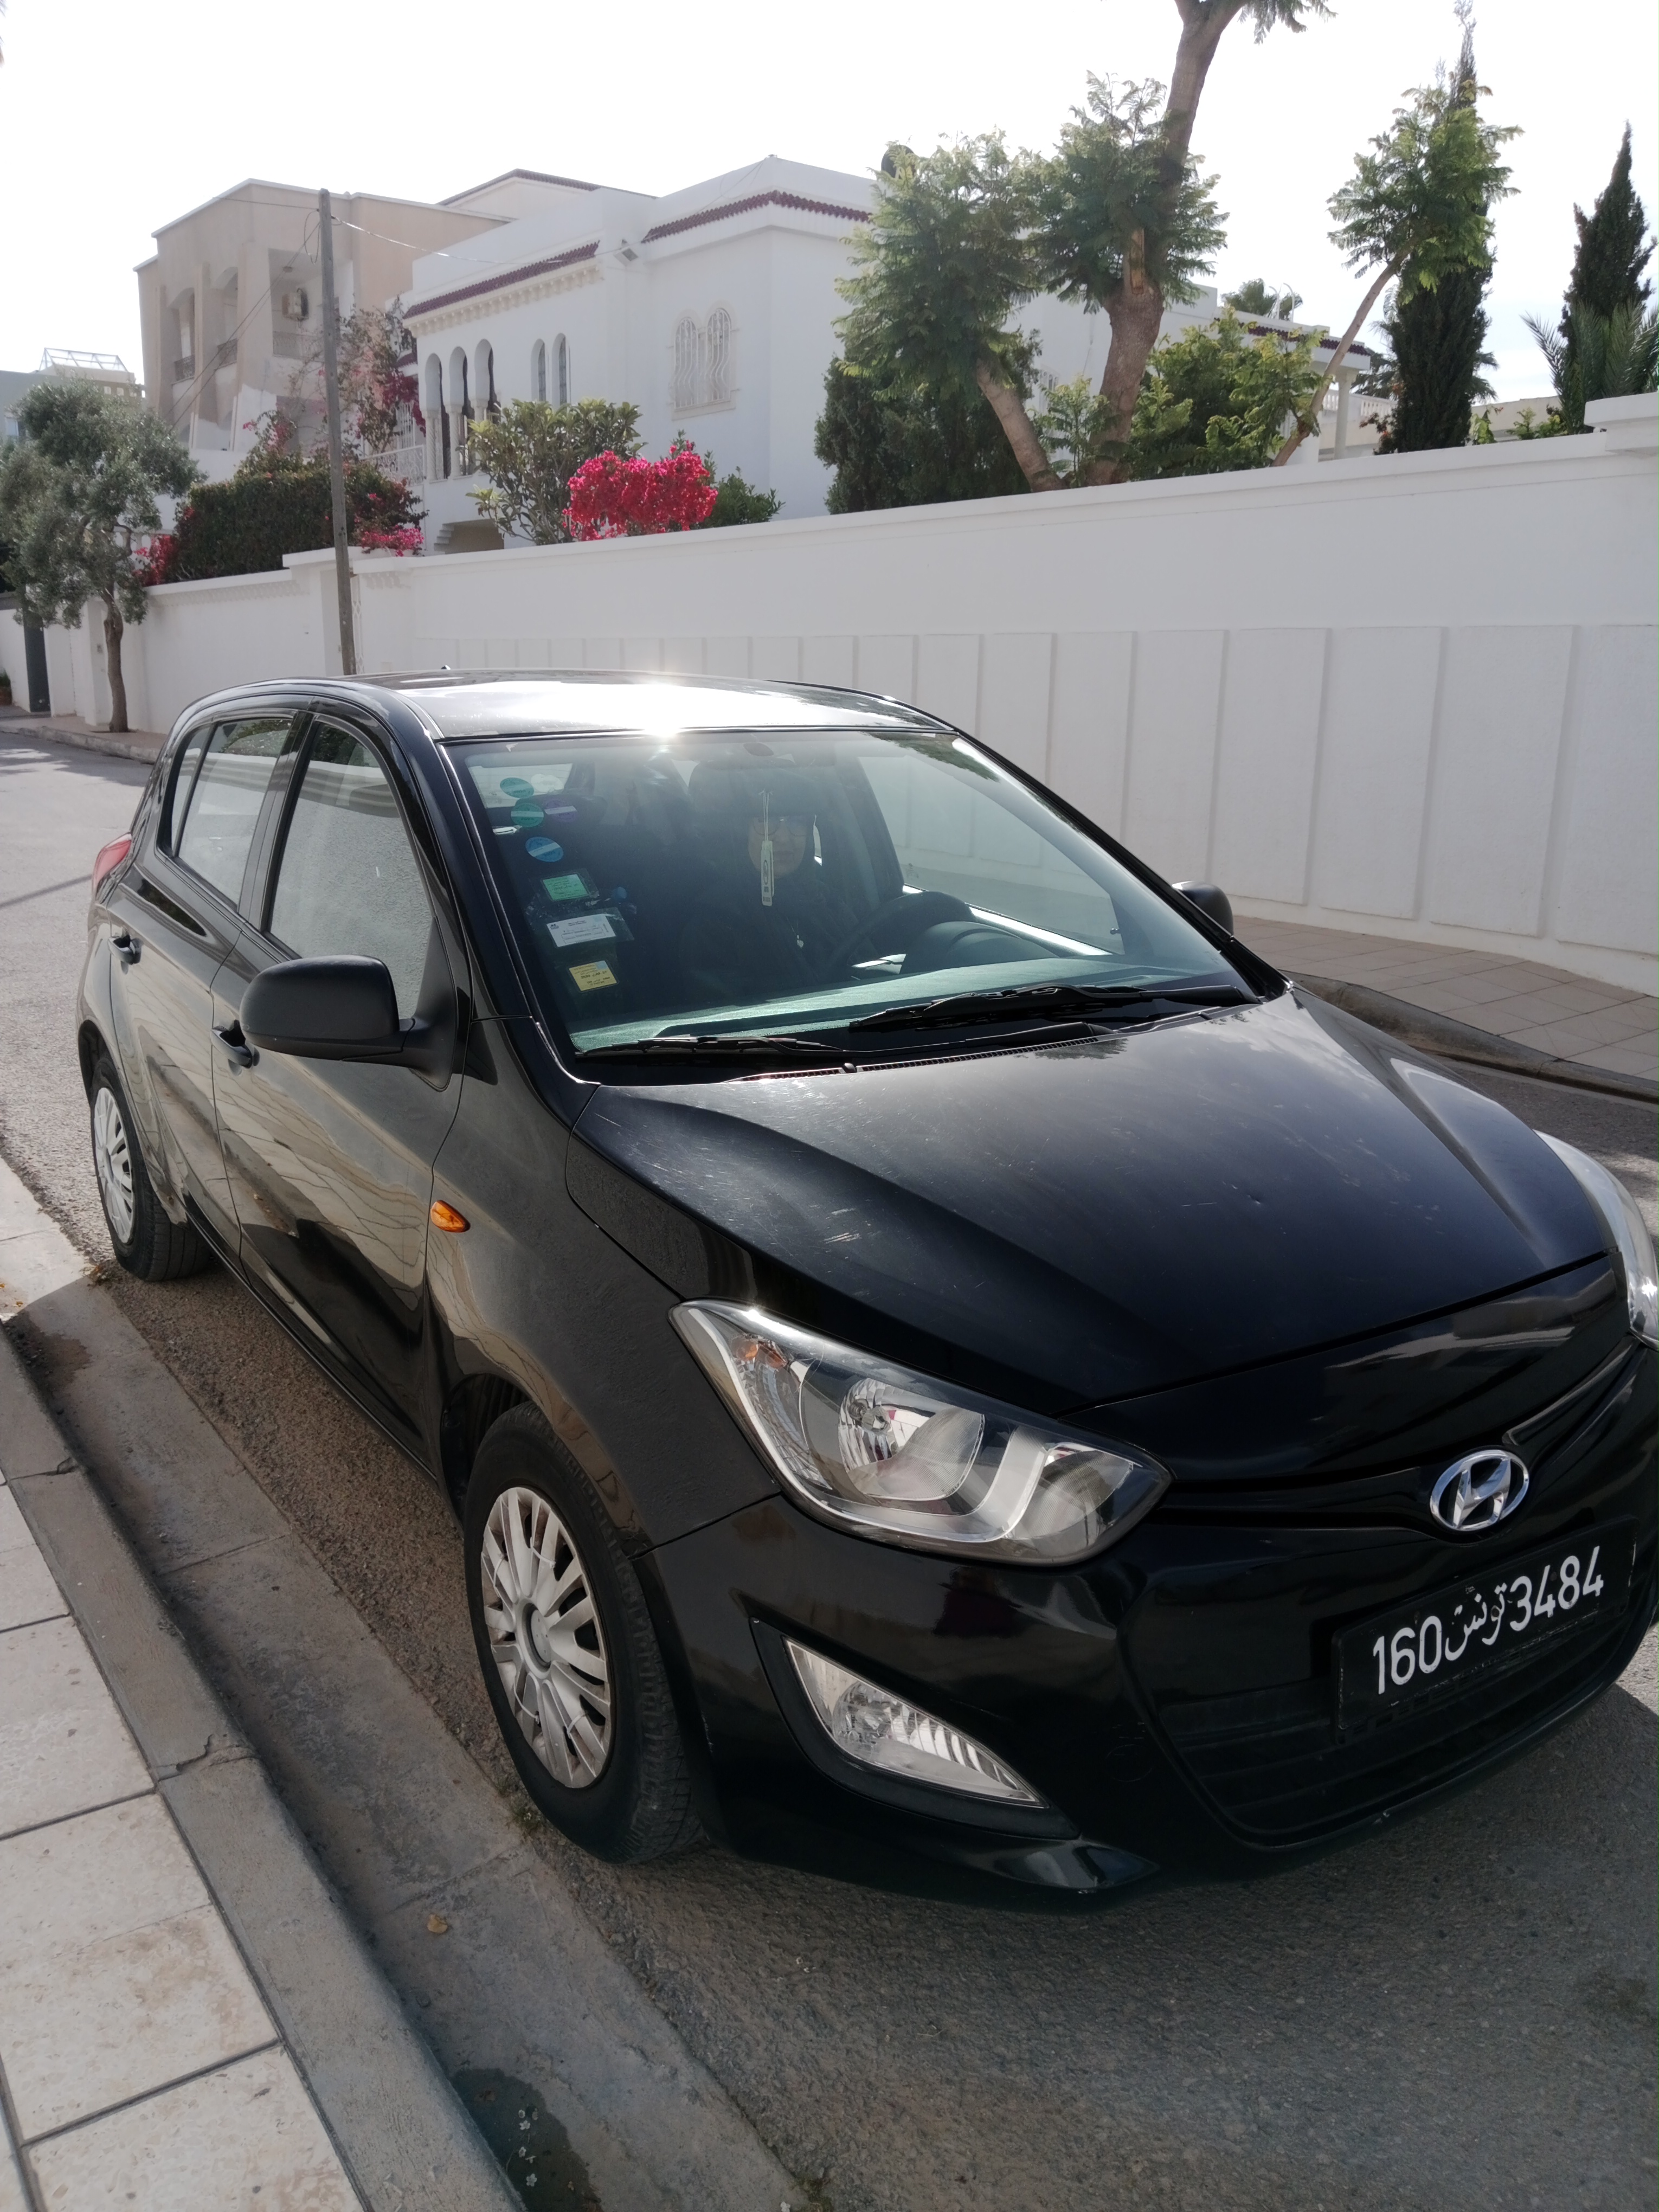 Hyundai Autre - Tunisie